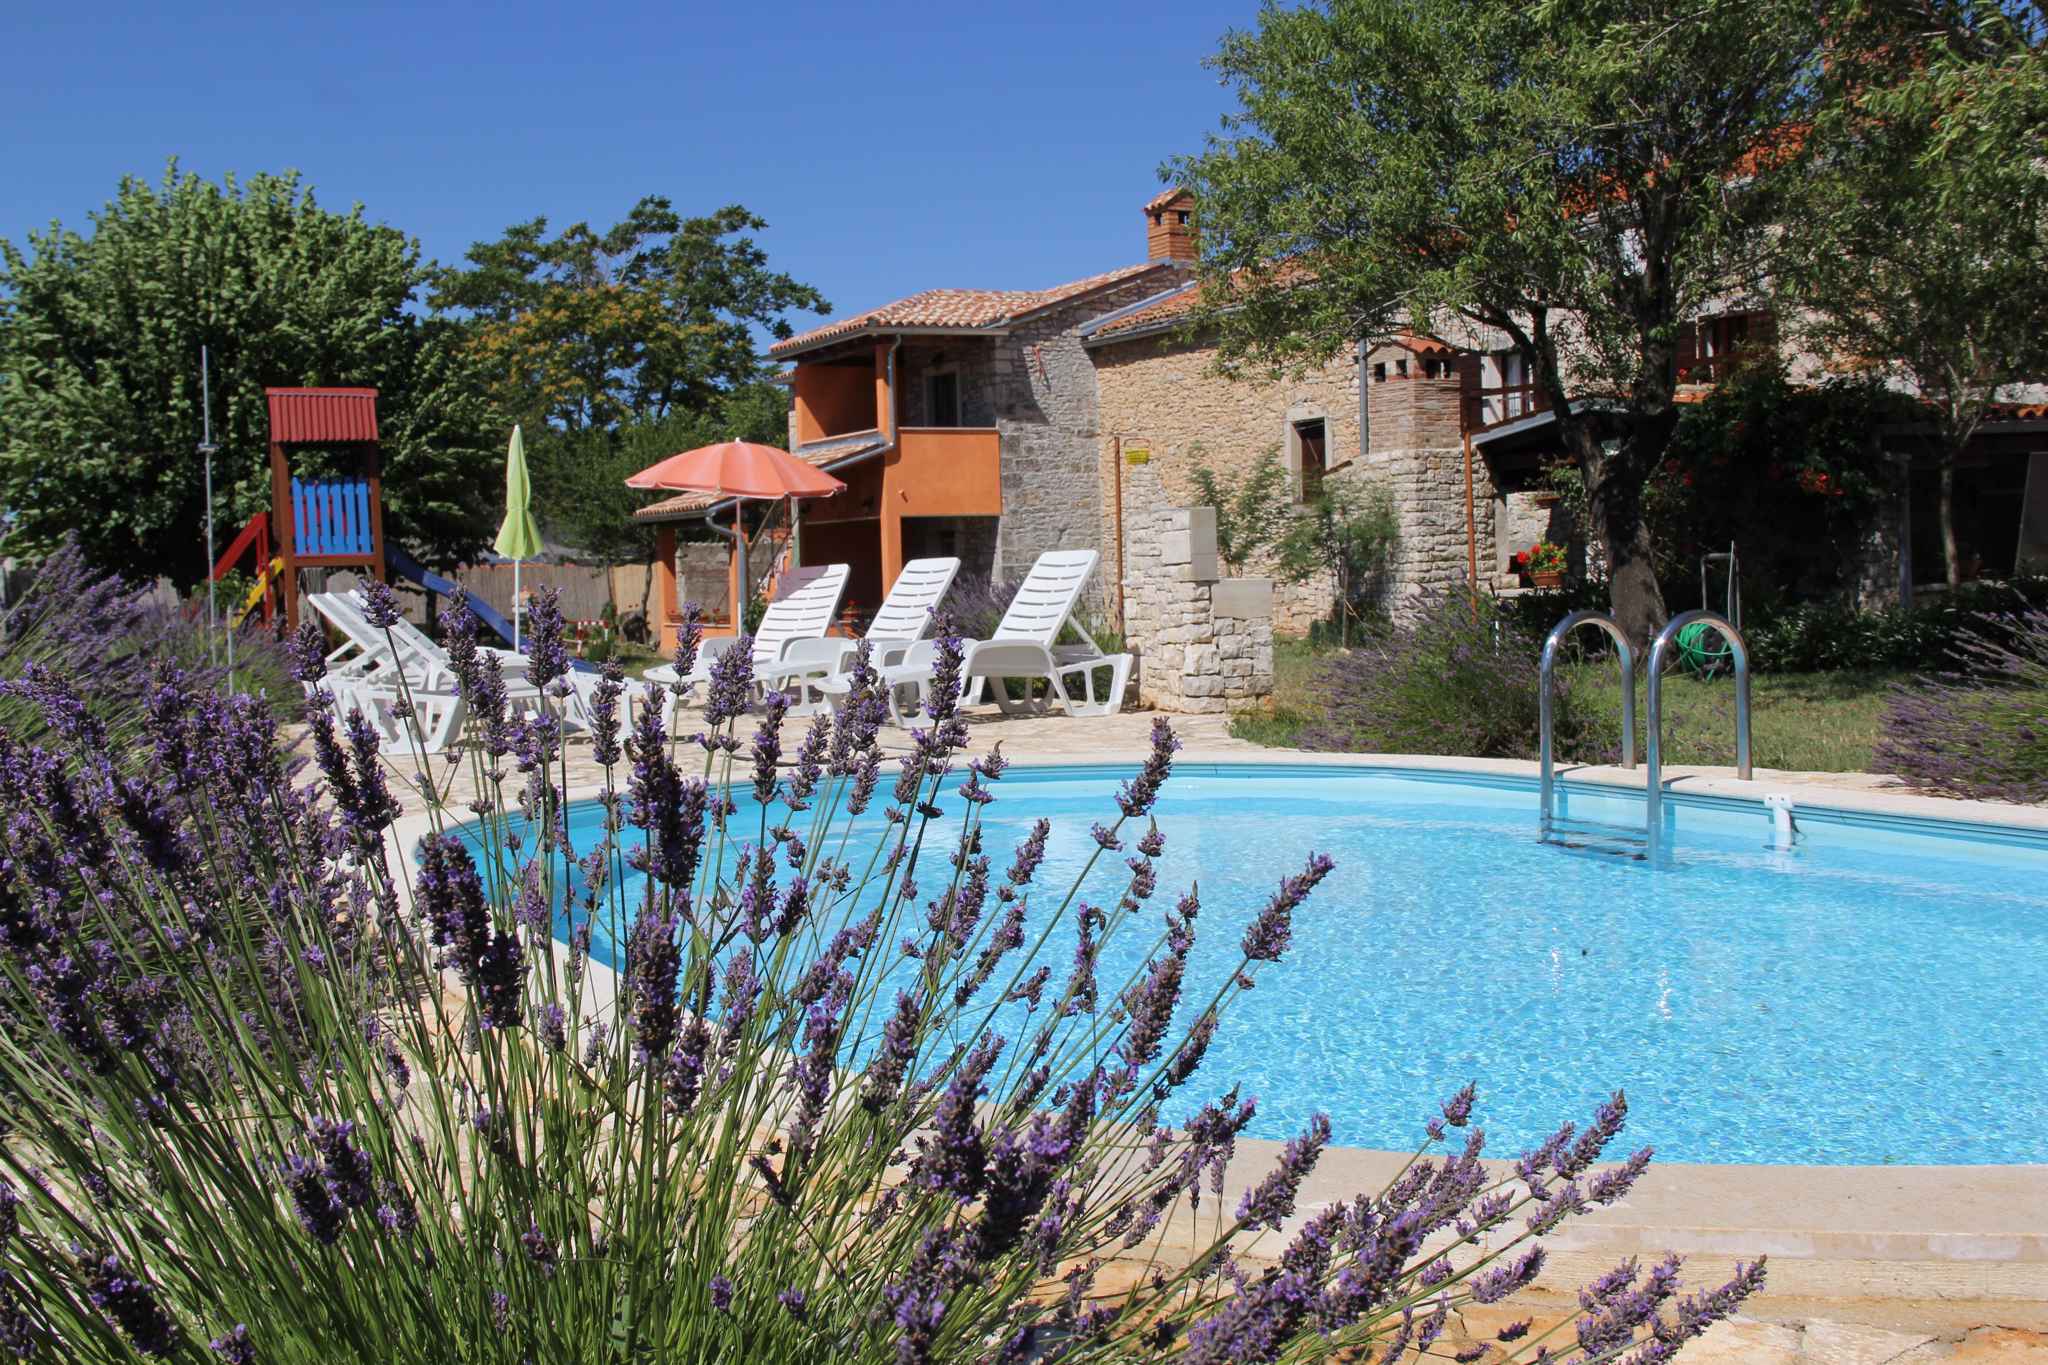 Ferienhaus mit Pool in Grünen Bauernhof in Kroatien